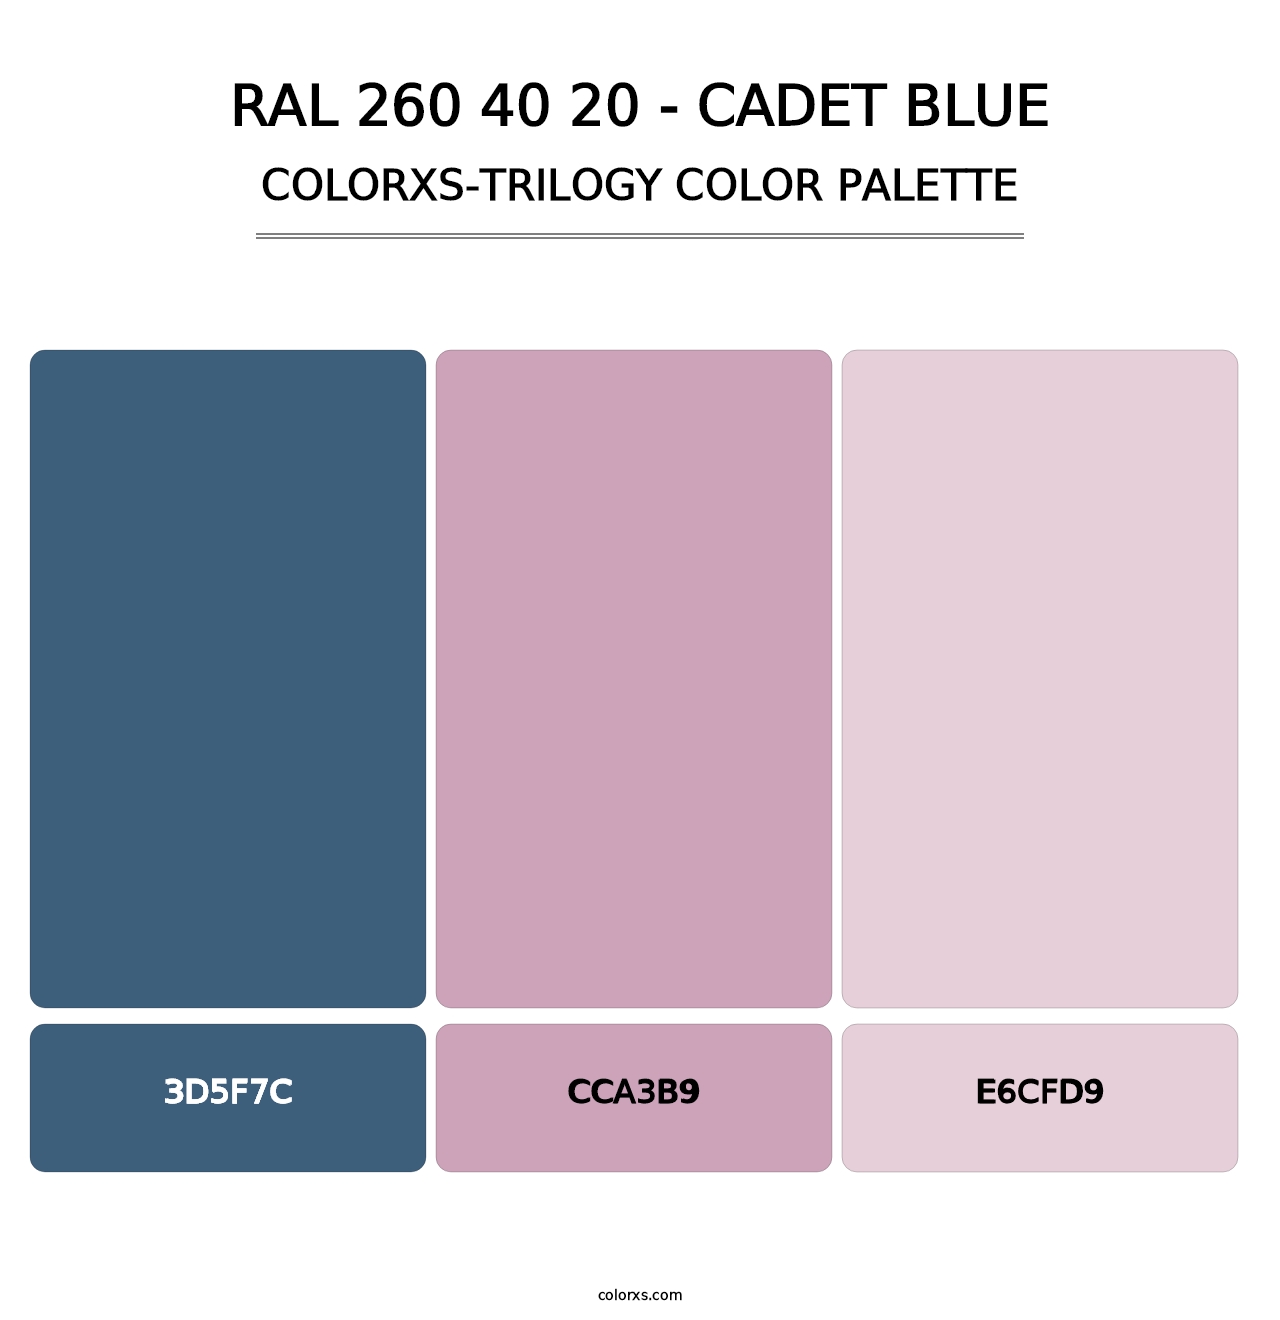 RAL 260 40 20 - Cadet Blue - Colorxs Trilogy Palette